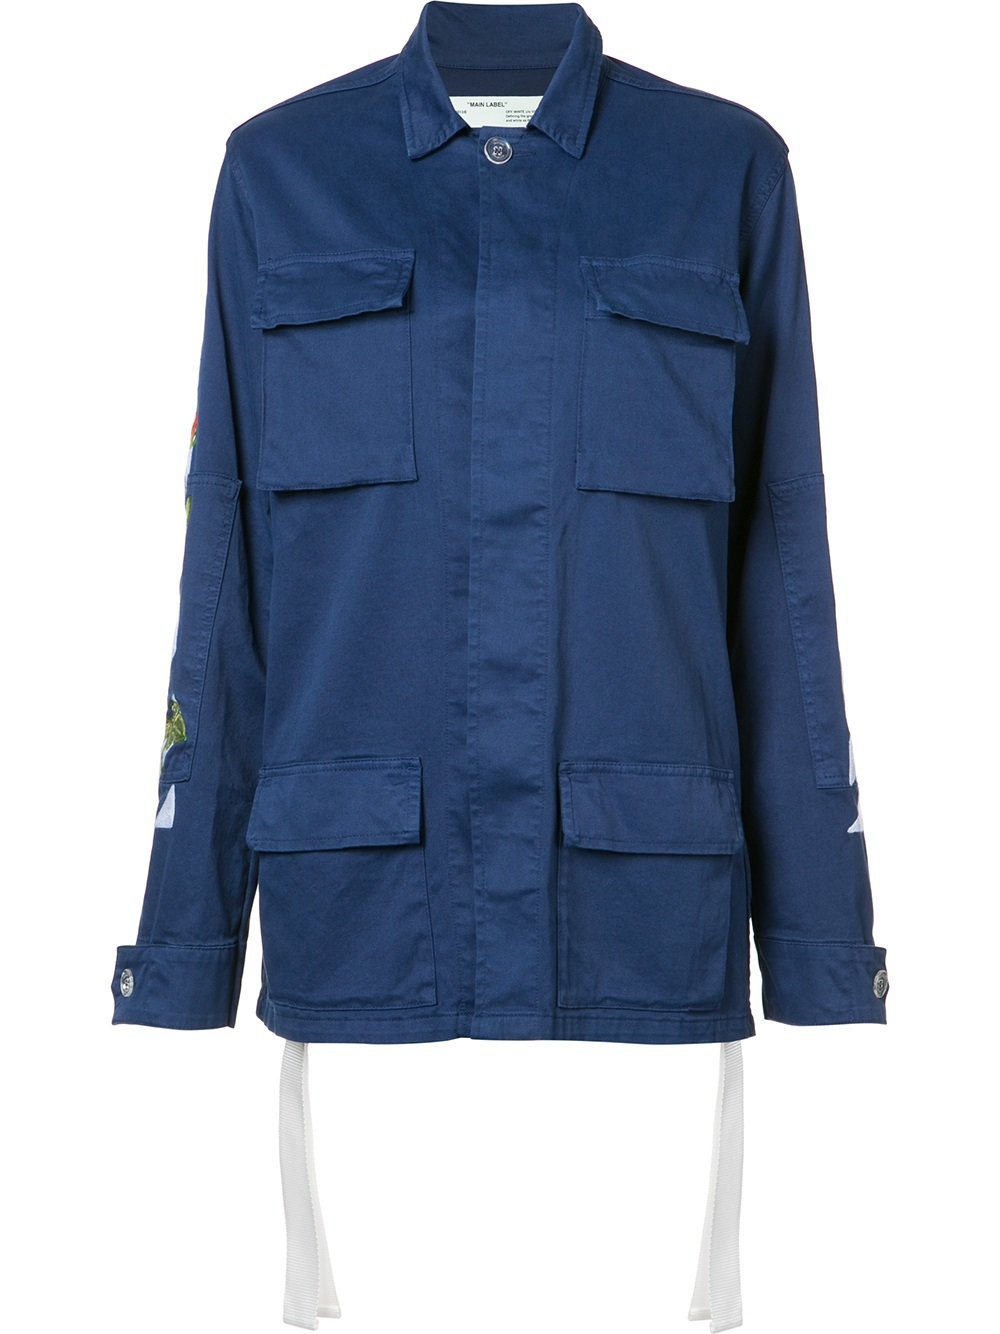 Off-White back print cargo jacket 3088 BLUE Women Clothing Military Jackets